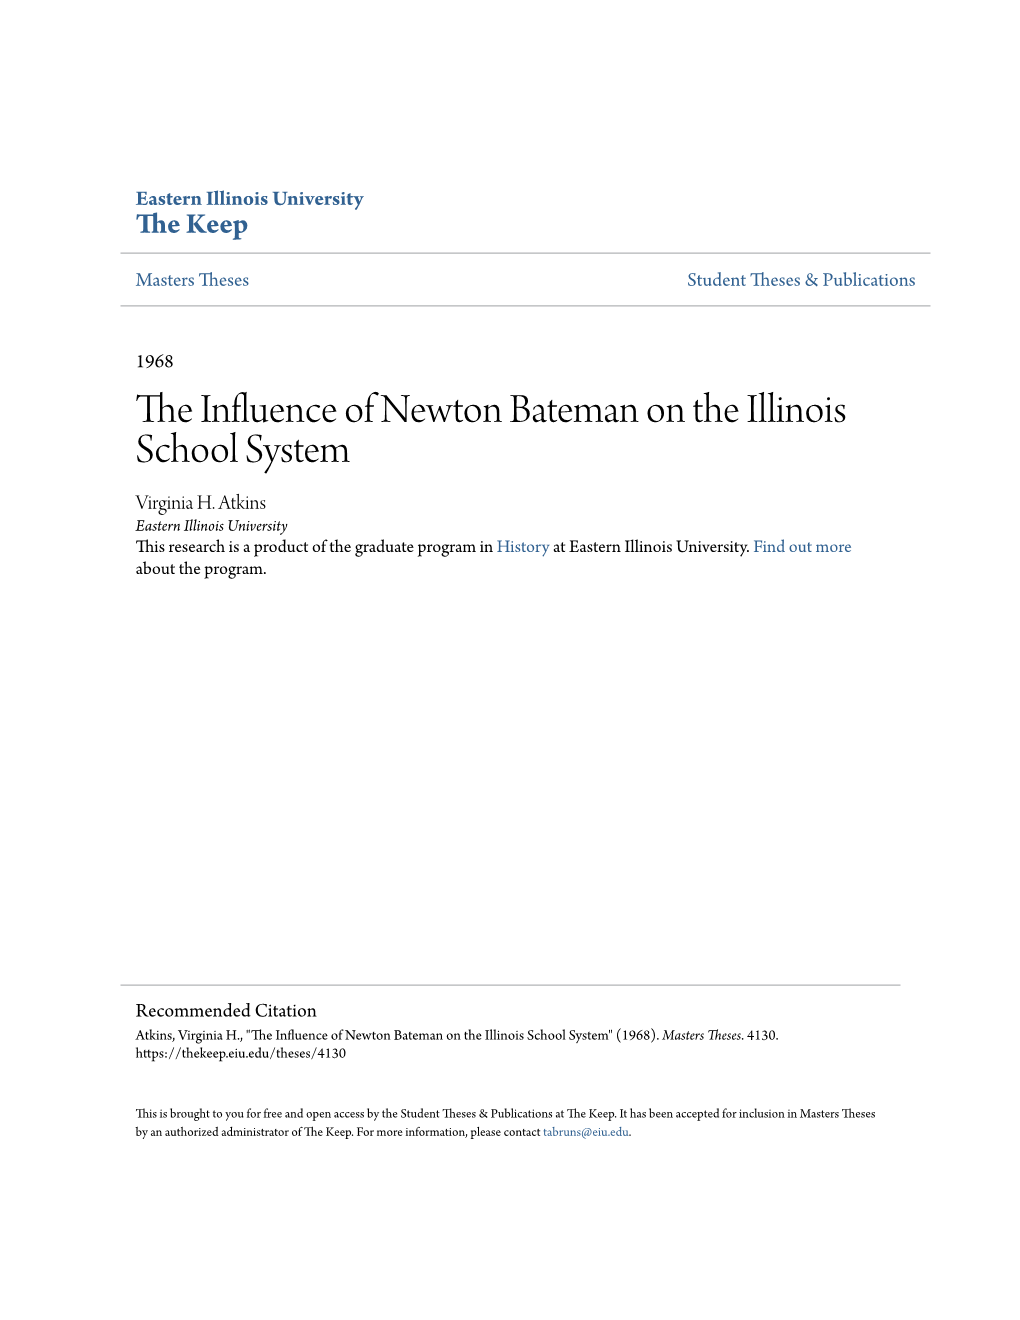 The Influence of Newton Bateman on the Illinois School System